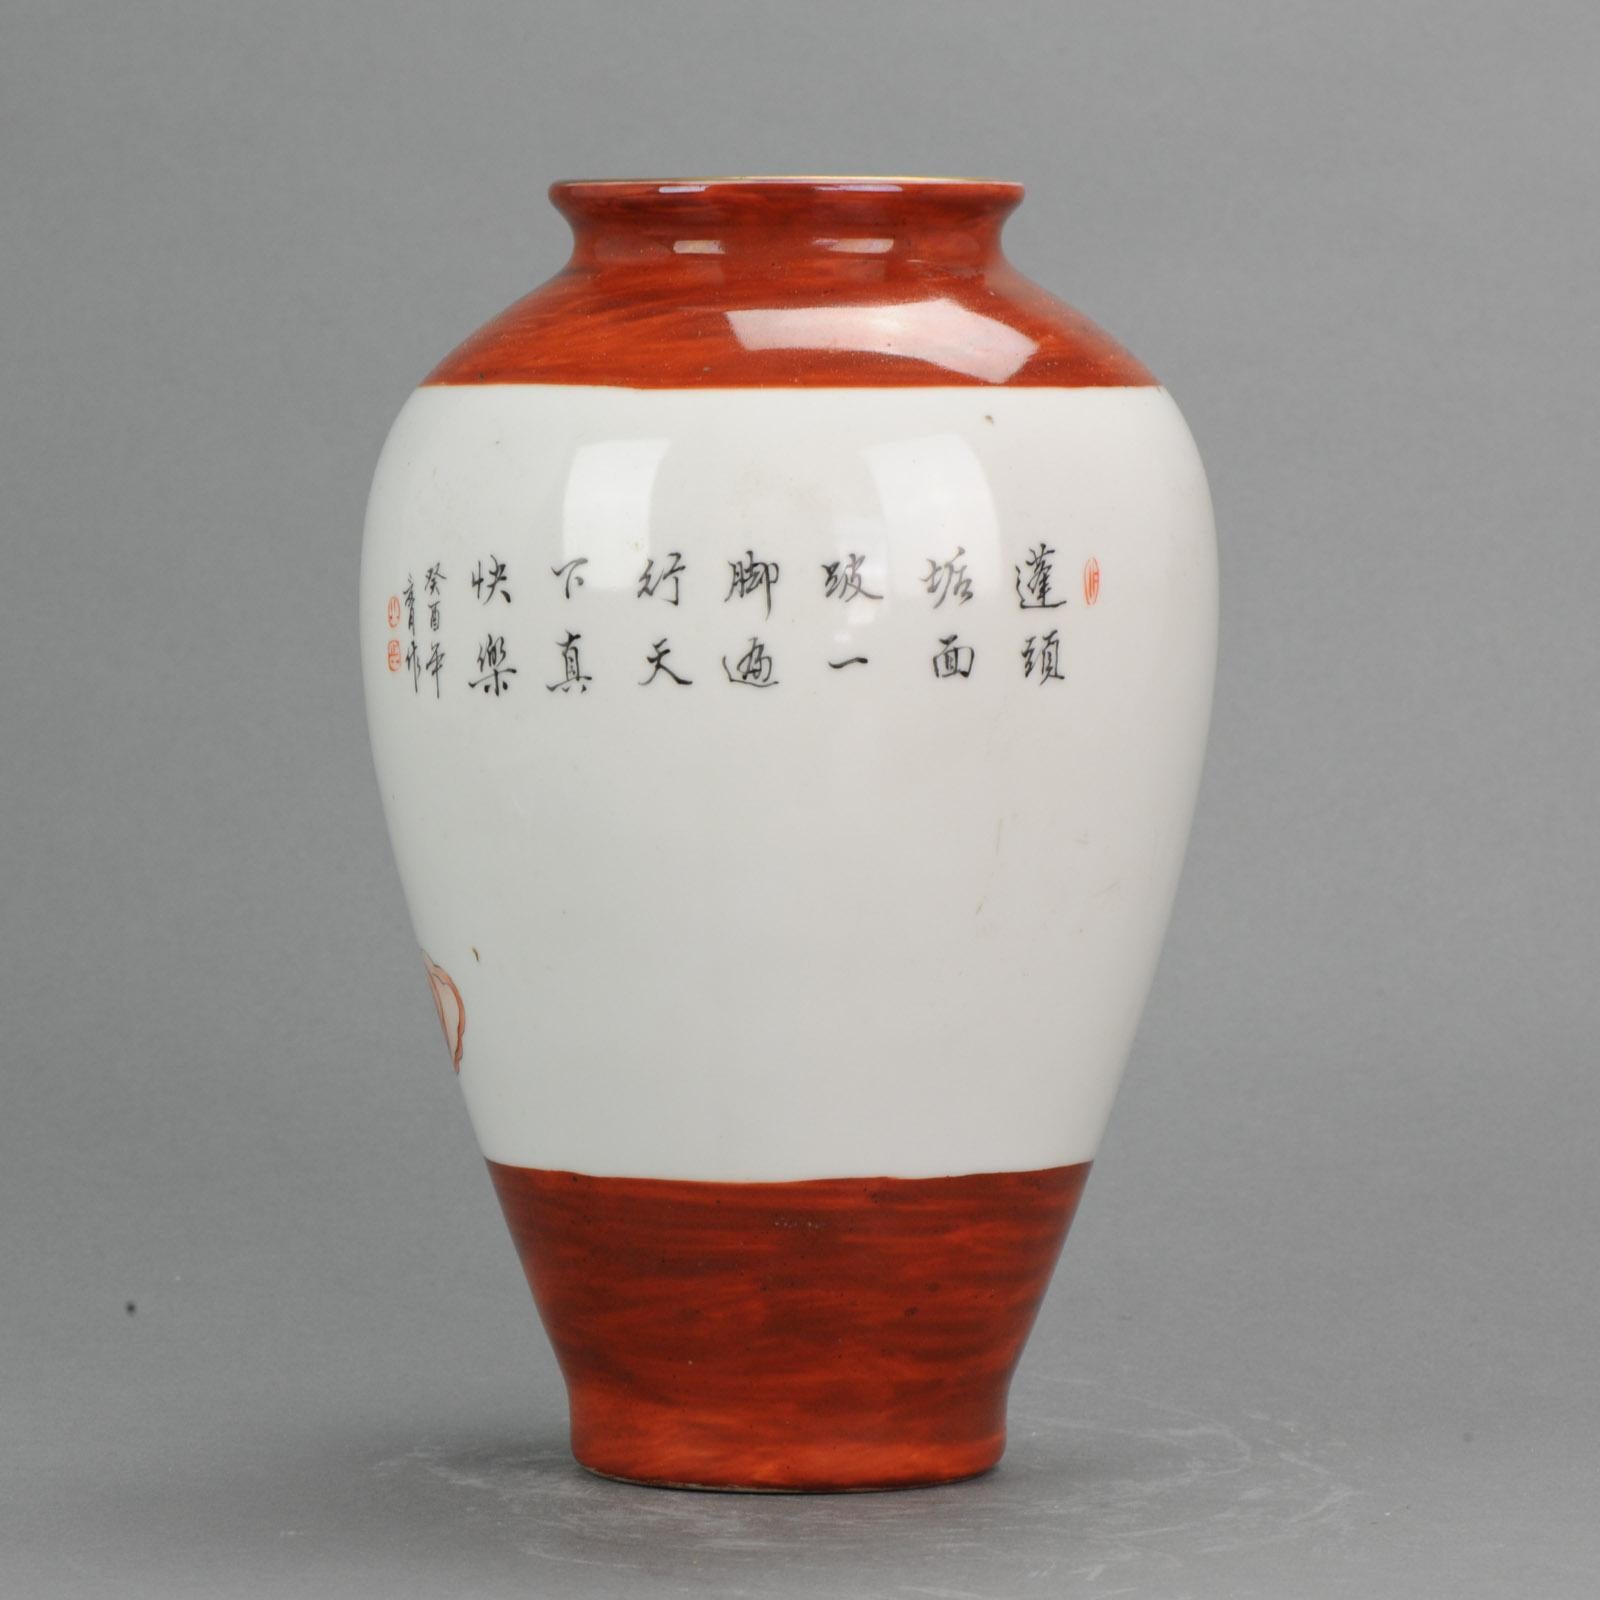 Vase très joliment décoré d'une scène représentant un sage.

Acheté à Hong Kong en 1991

Informations complémentaires :
MATERIAL : Porcelaine et poterie
Région d'origine : Chine
Période : 20e siècle PRoC (1949 - aujourd'hui)
État : État général ;